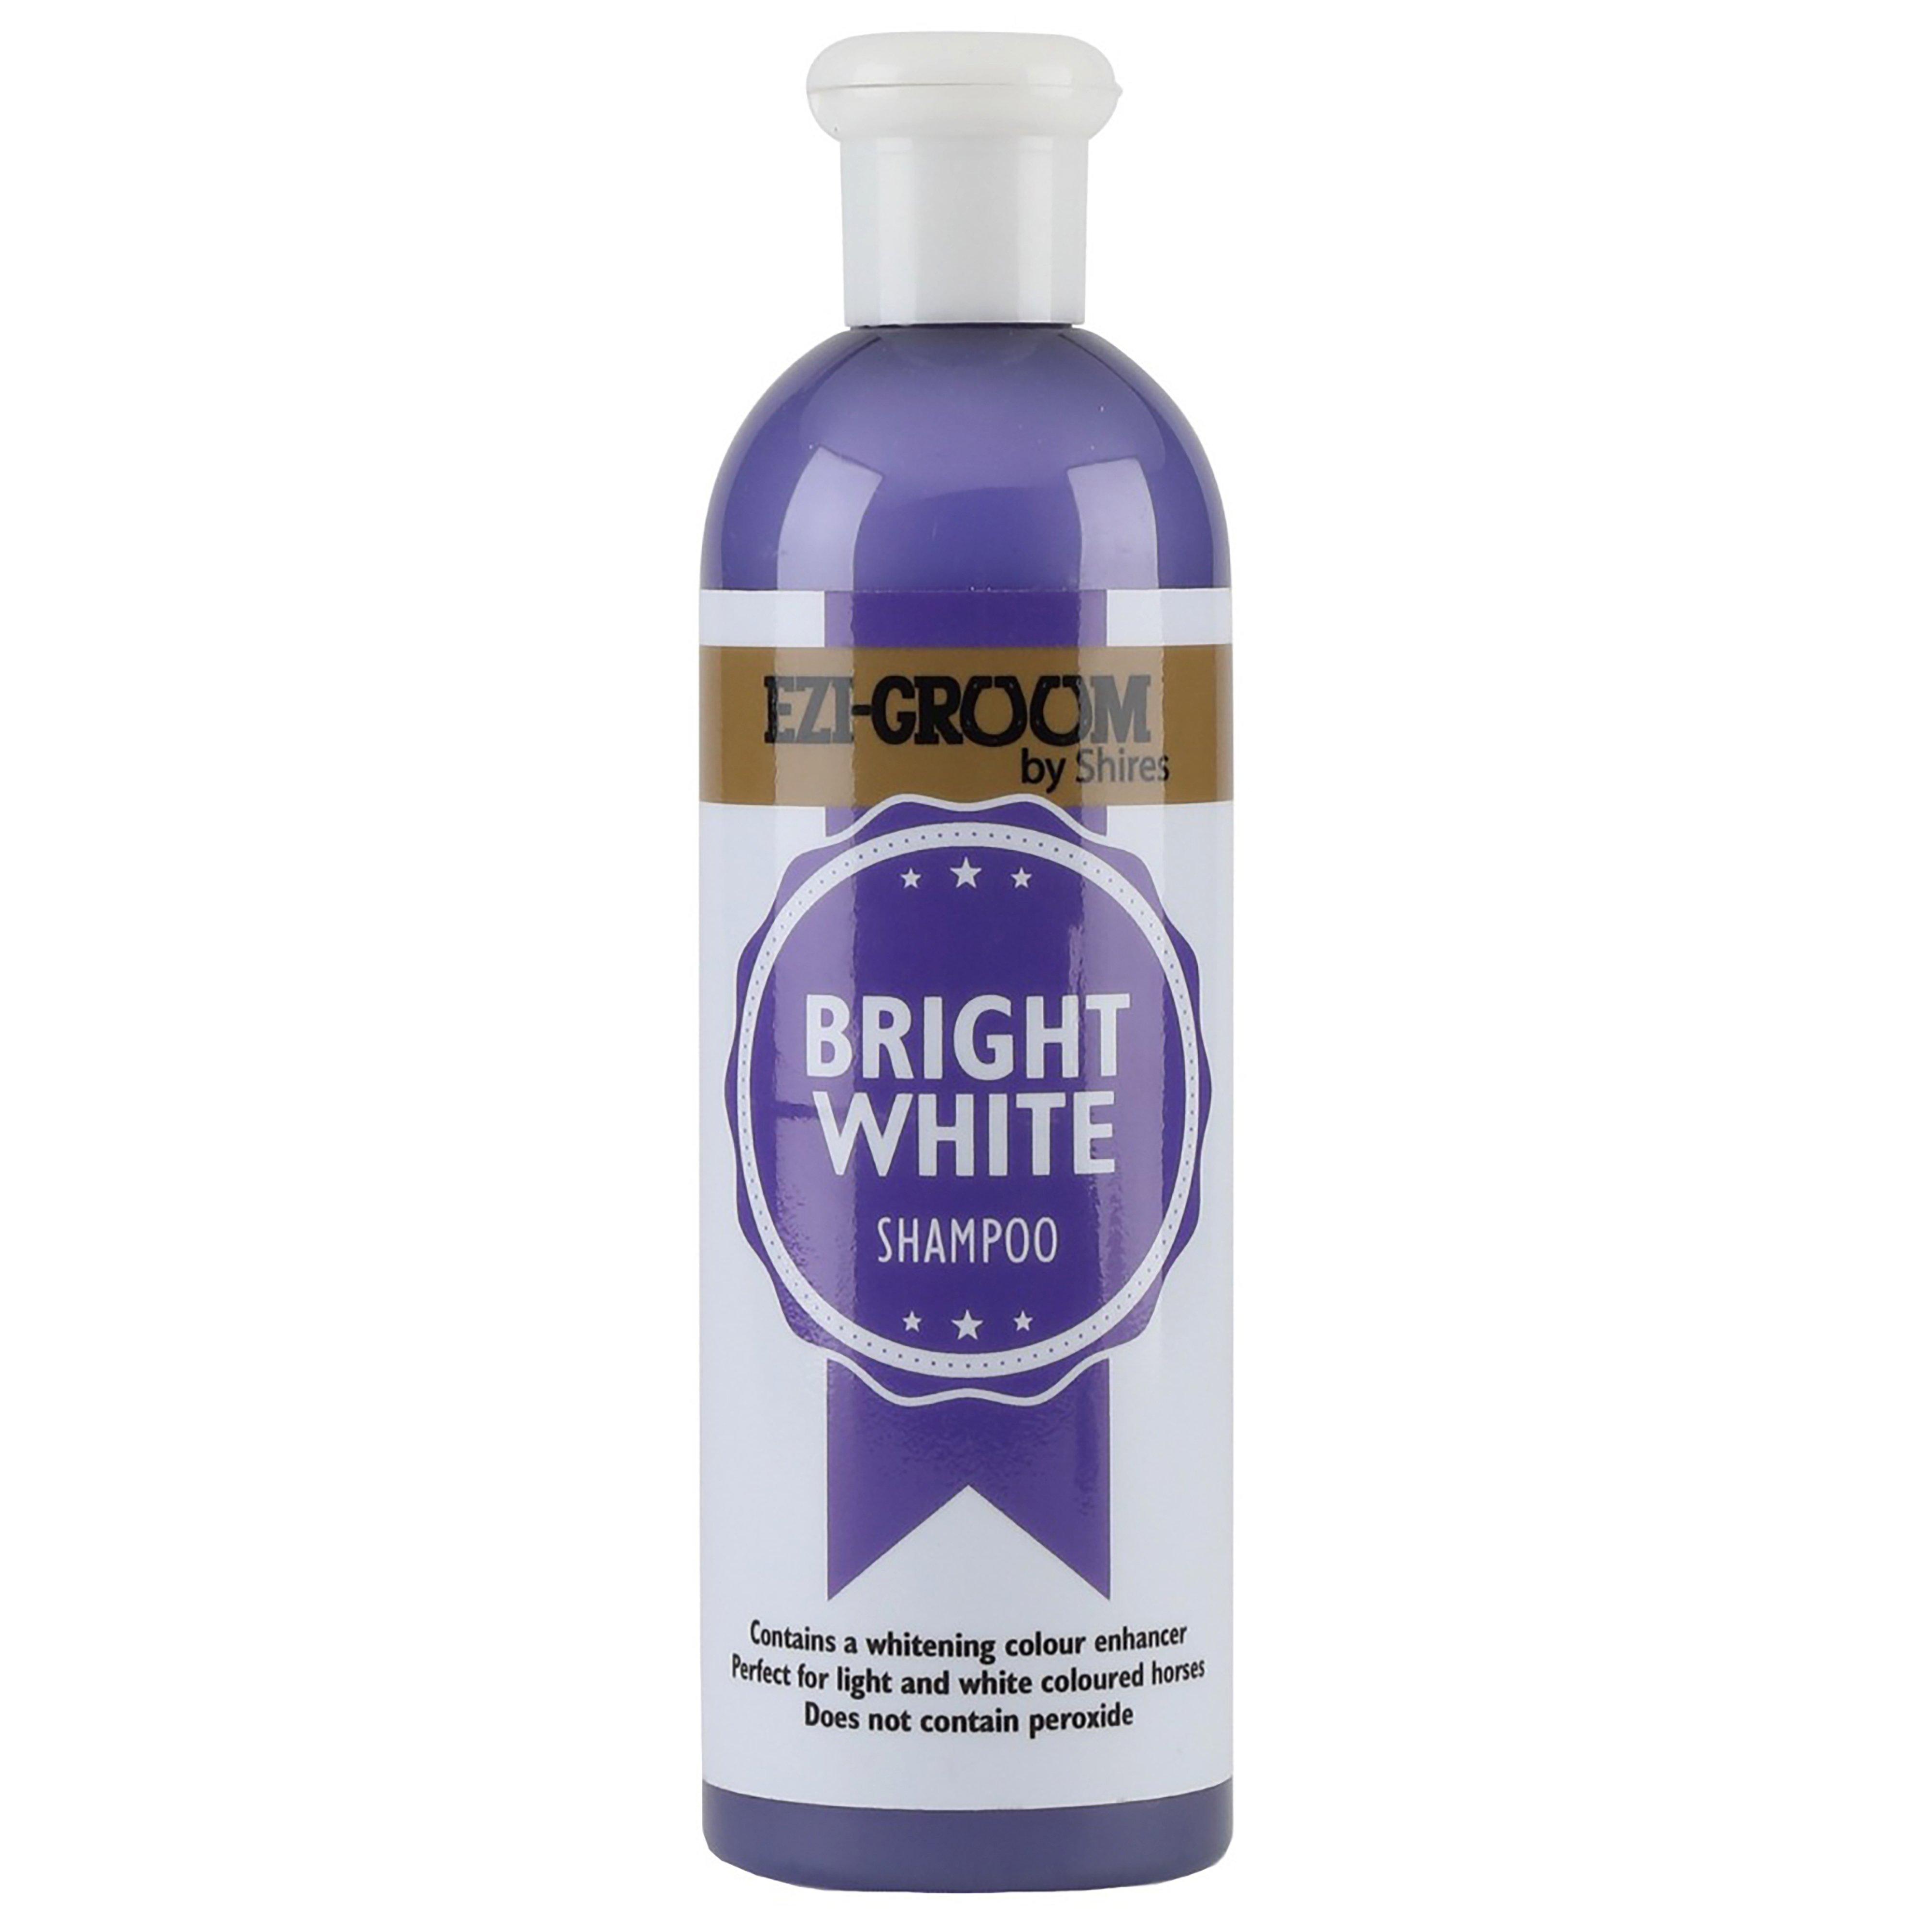 Bright White Shampoo